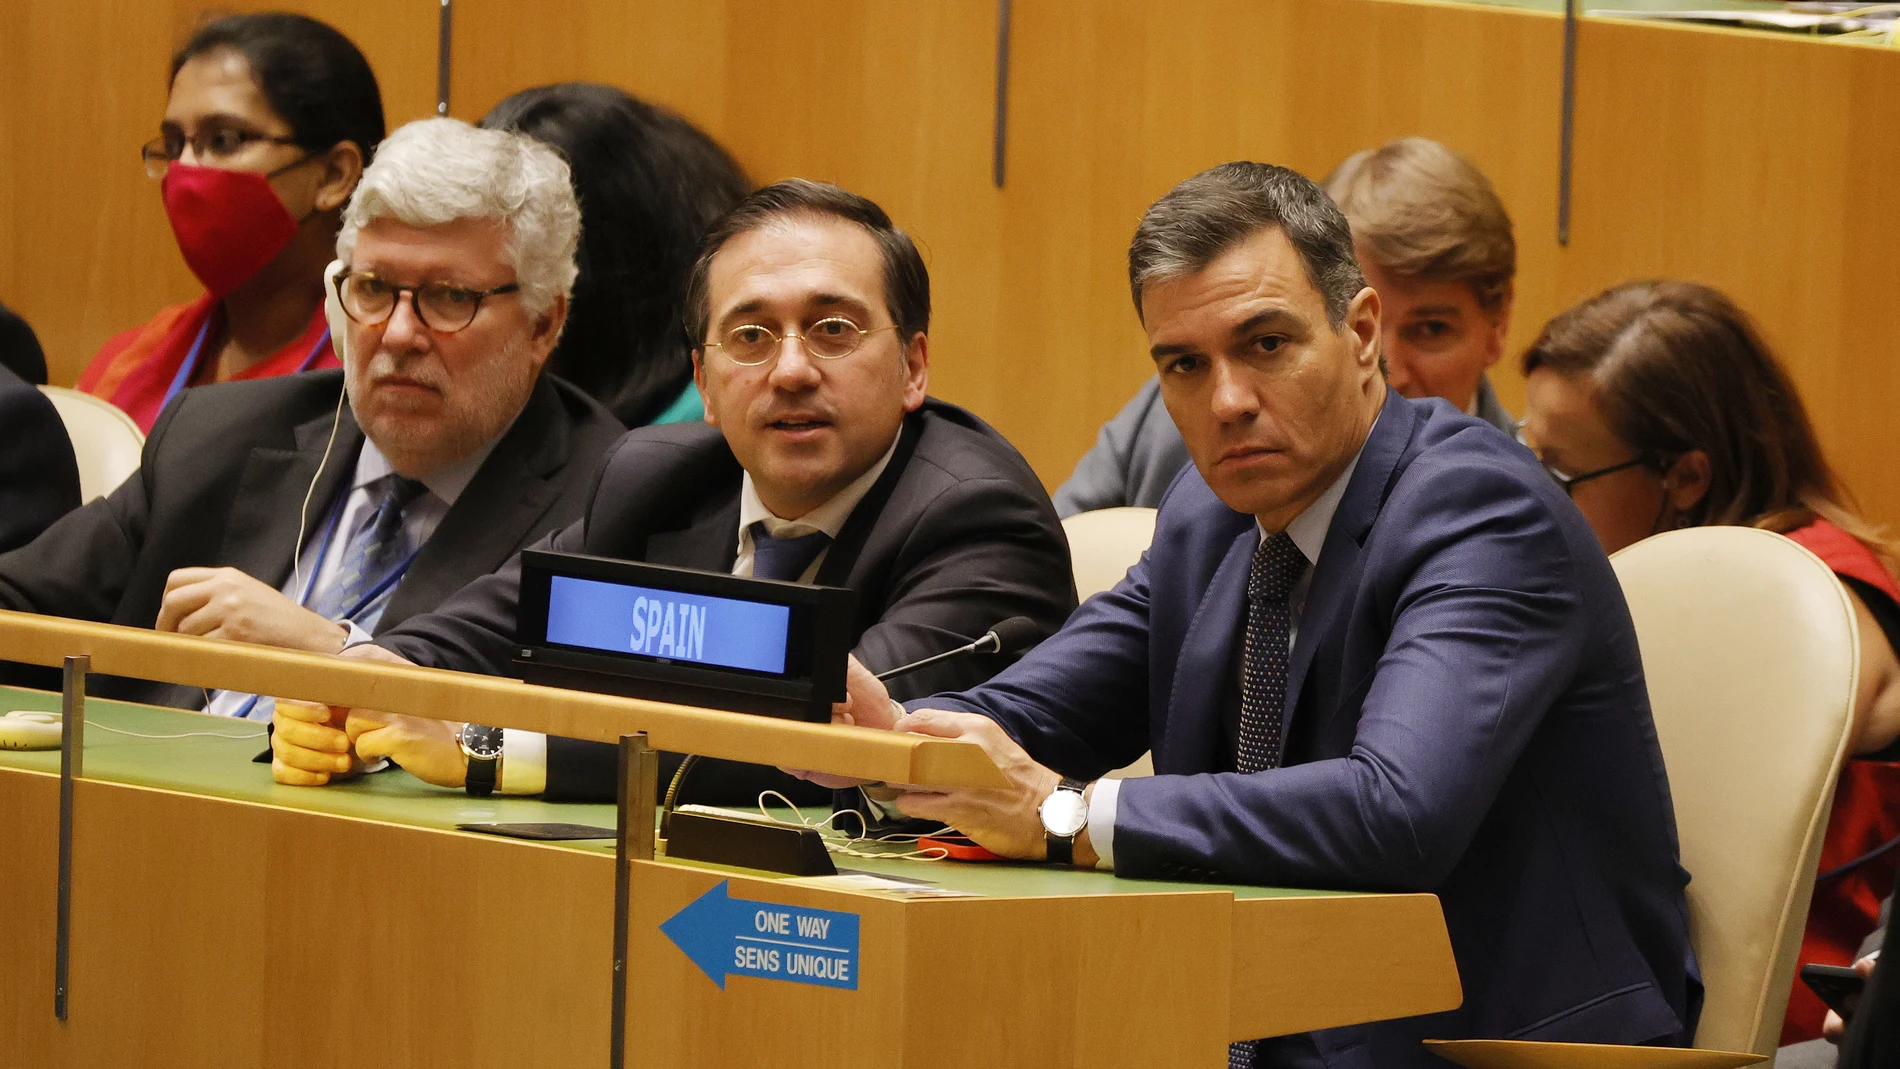 El presidente del Gobierno español, Pedro Sánchez, habla en la sede de la ONU